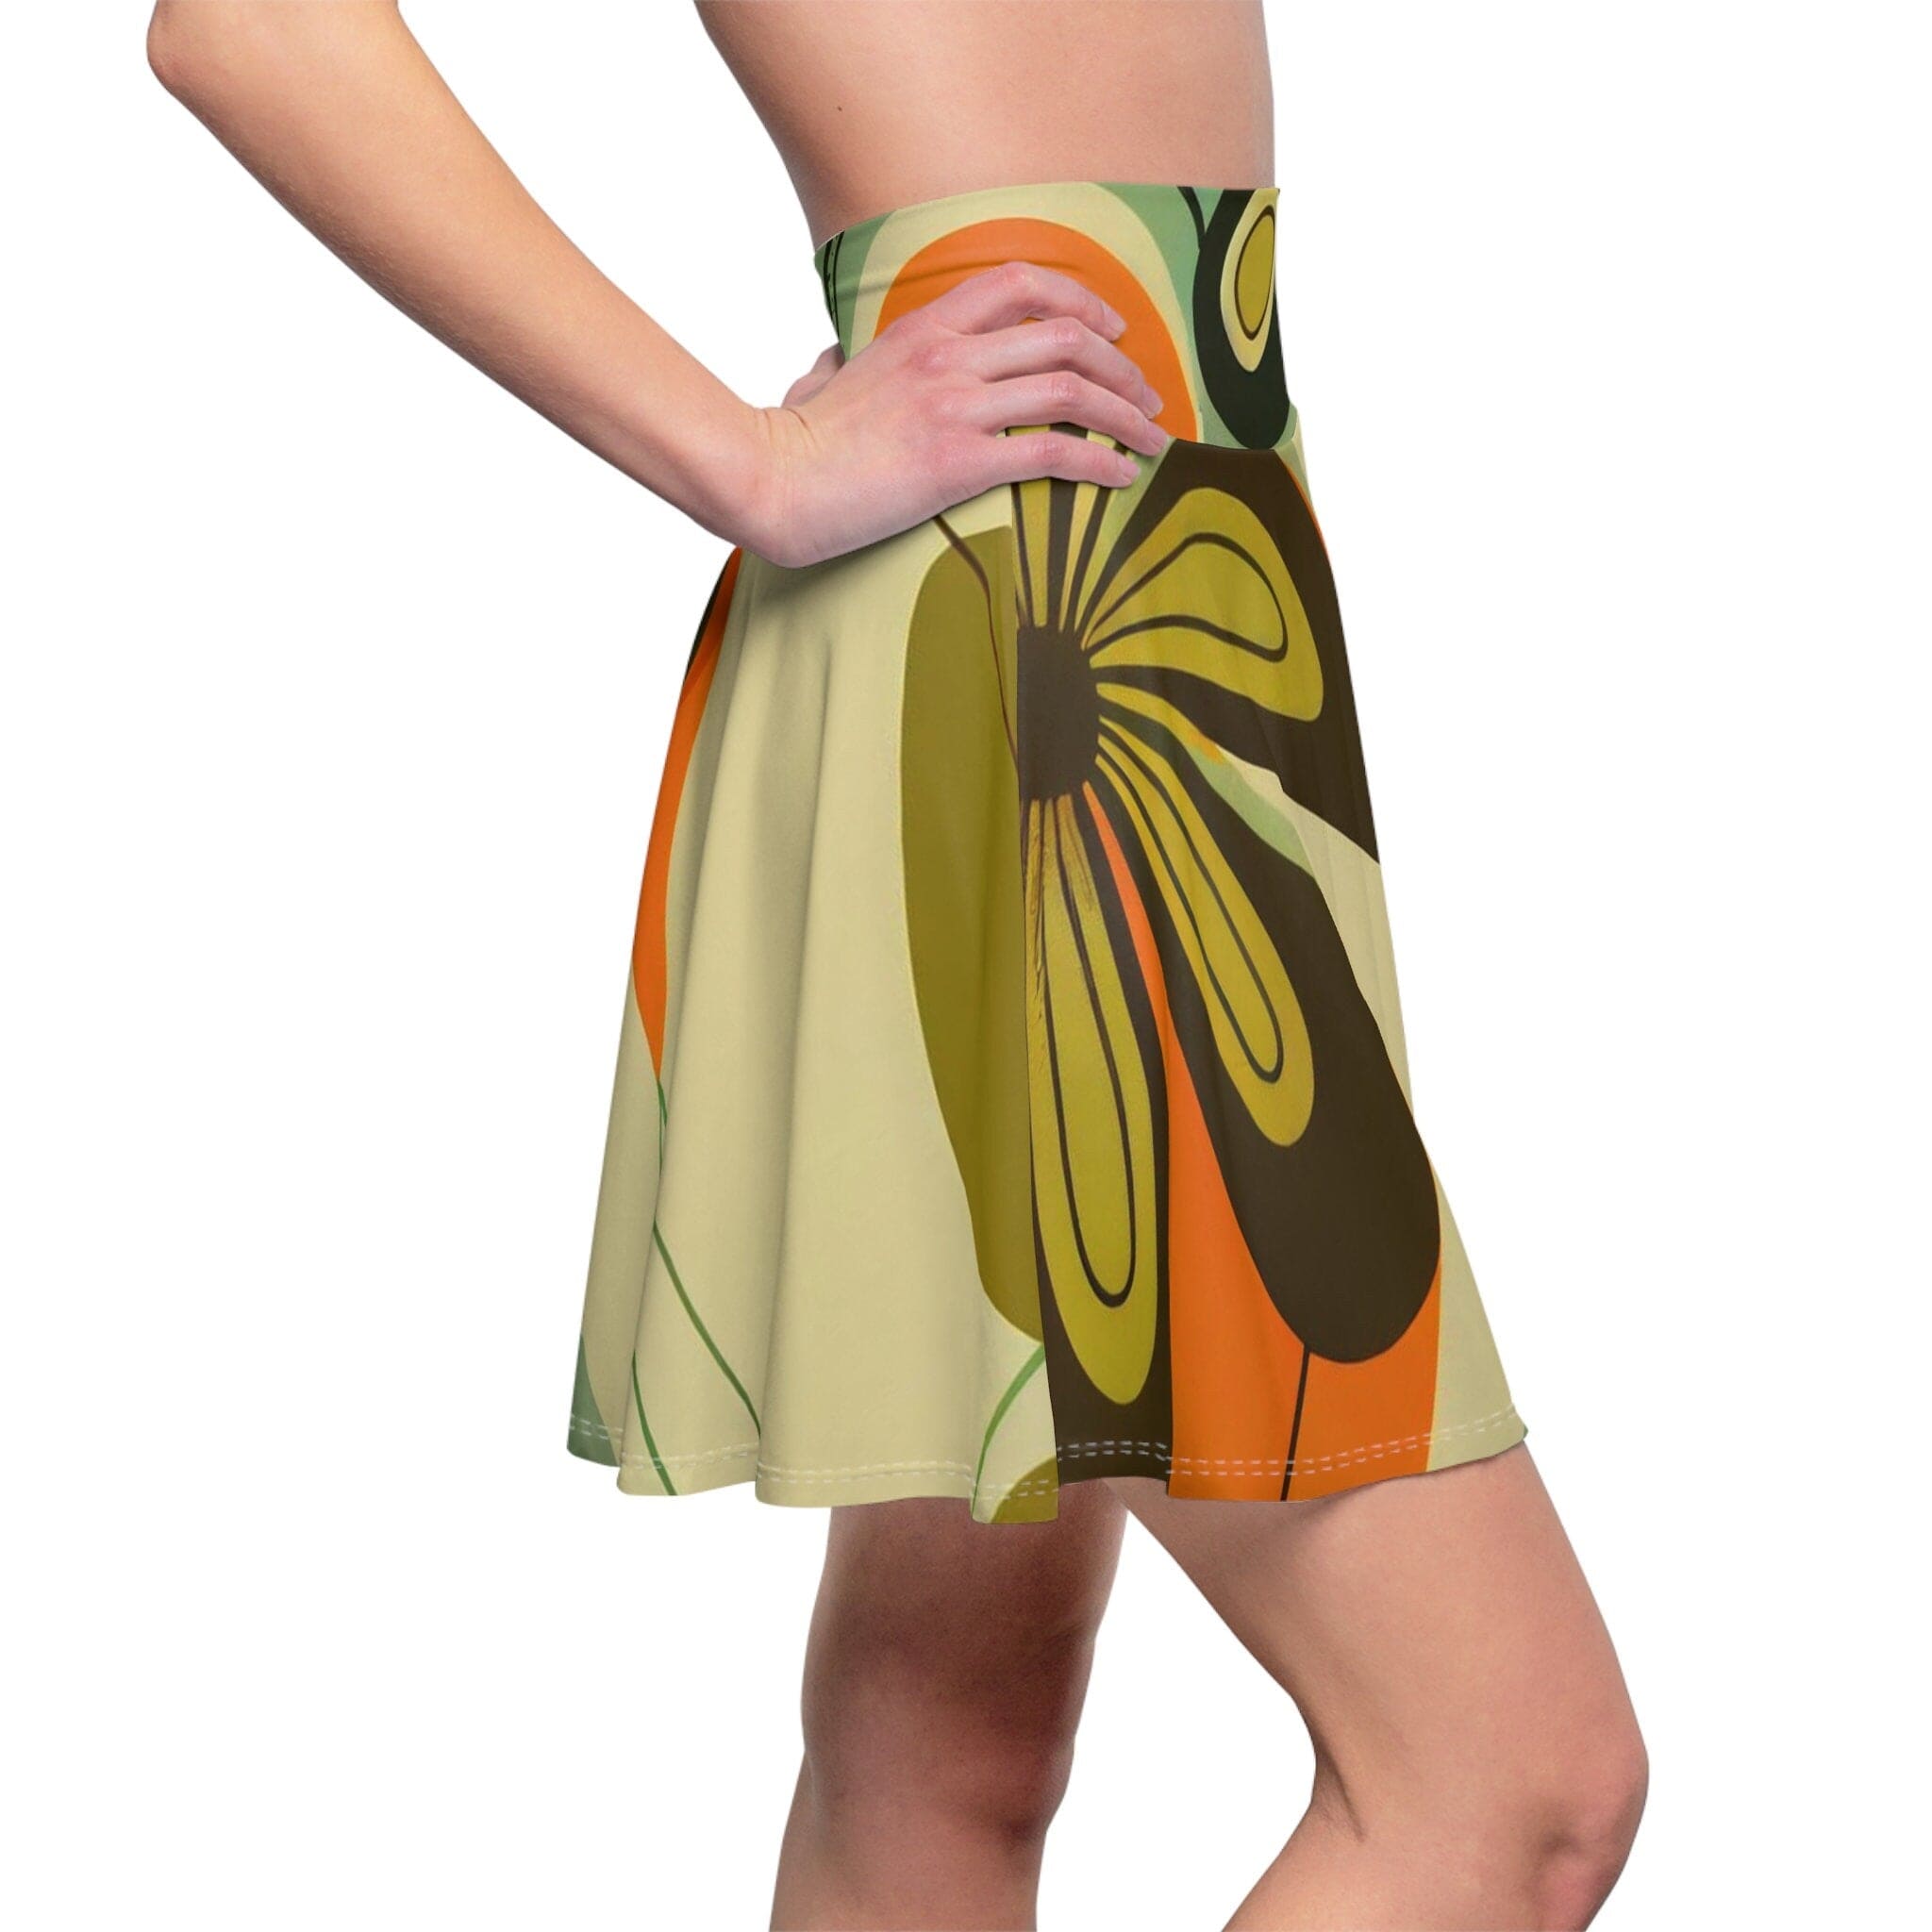 Kate McEnroe New York Groovy 60s, 70s Retro Skirt, Mid Century Modern Flower Power Disco Hipster Style Flowy Skirt - 130082223Skirts19393996718462580014